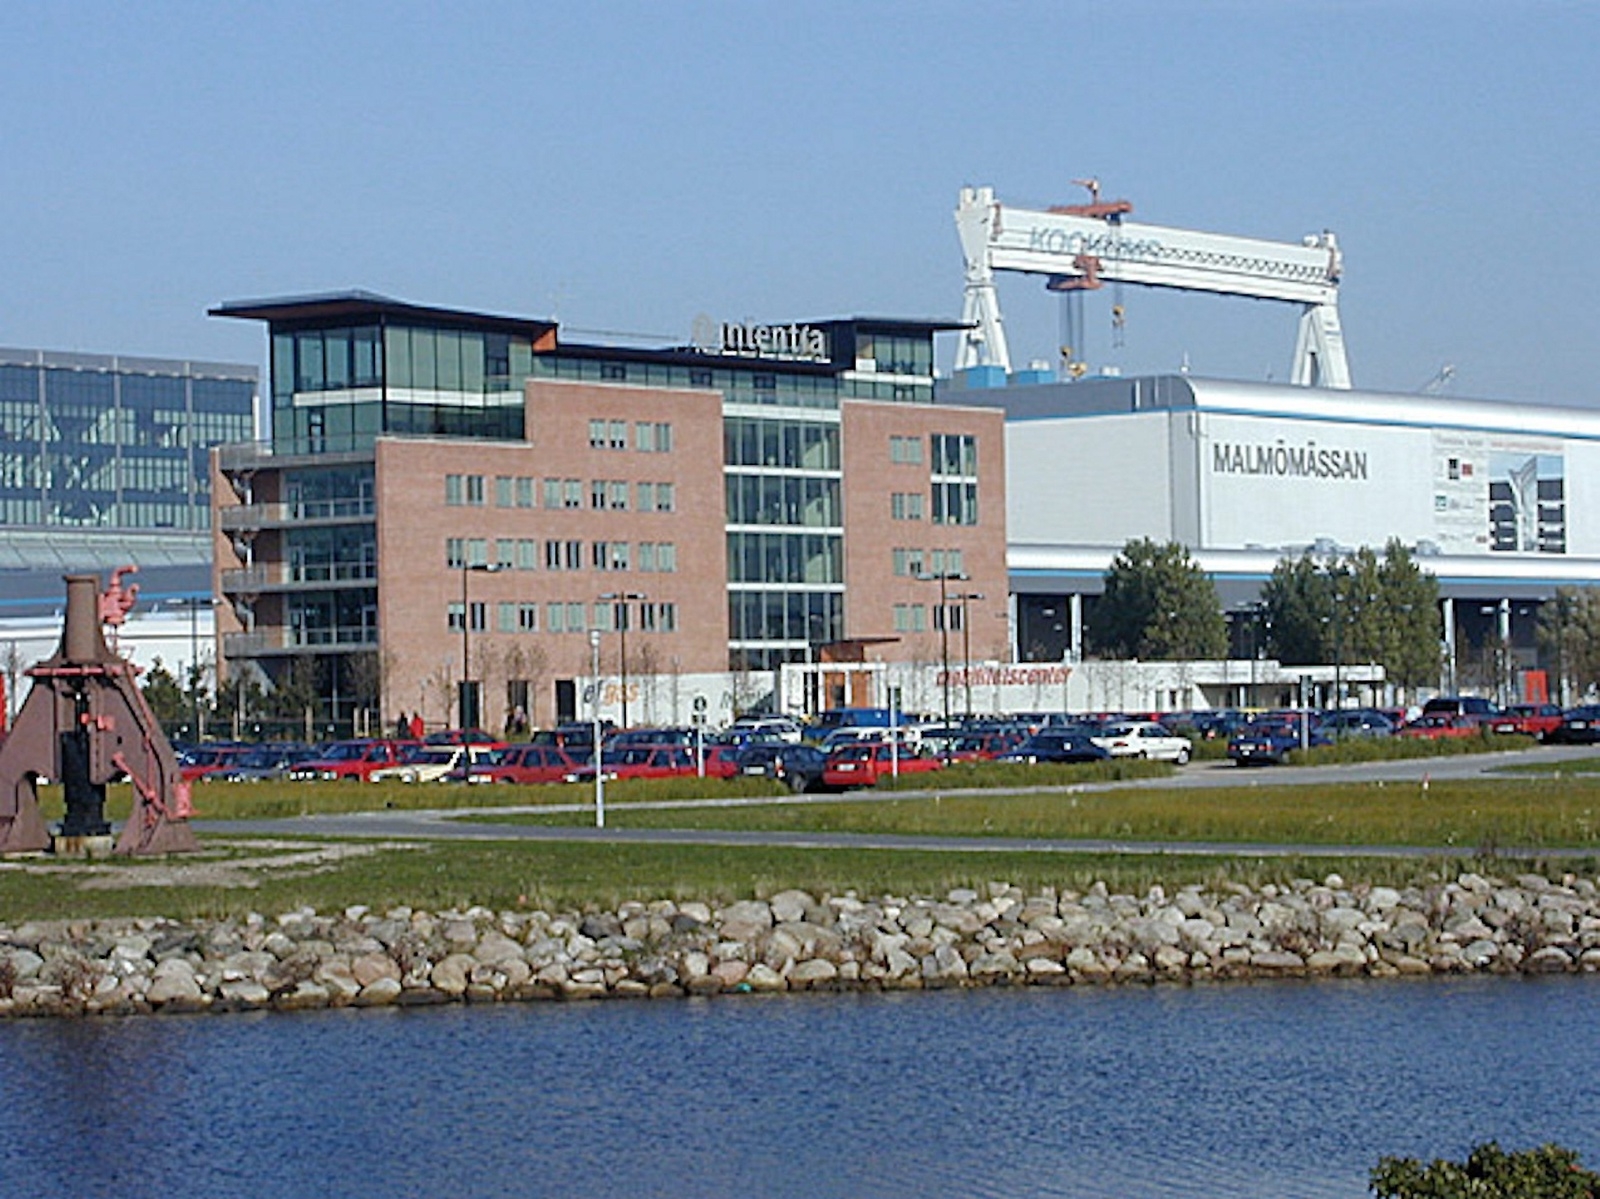 Intentiahuset kom till tidigt under Västra hamnens utveckling i Malmö. Den som kan sitt Malmö ser hur det, så att säga, blinkar åt husen vid Ribersborg, mitt emot.